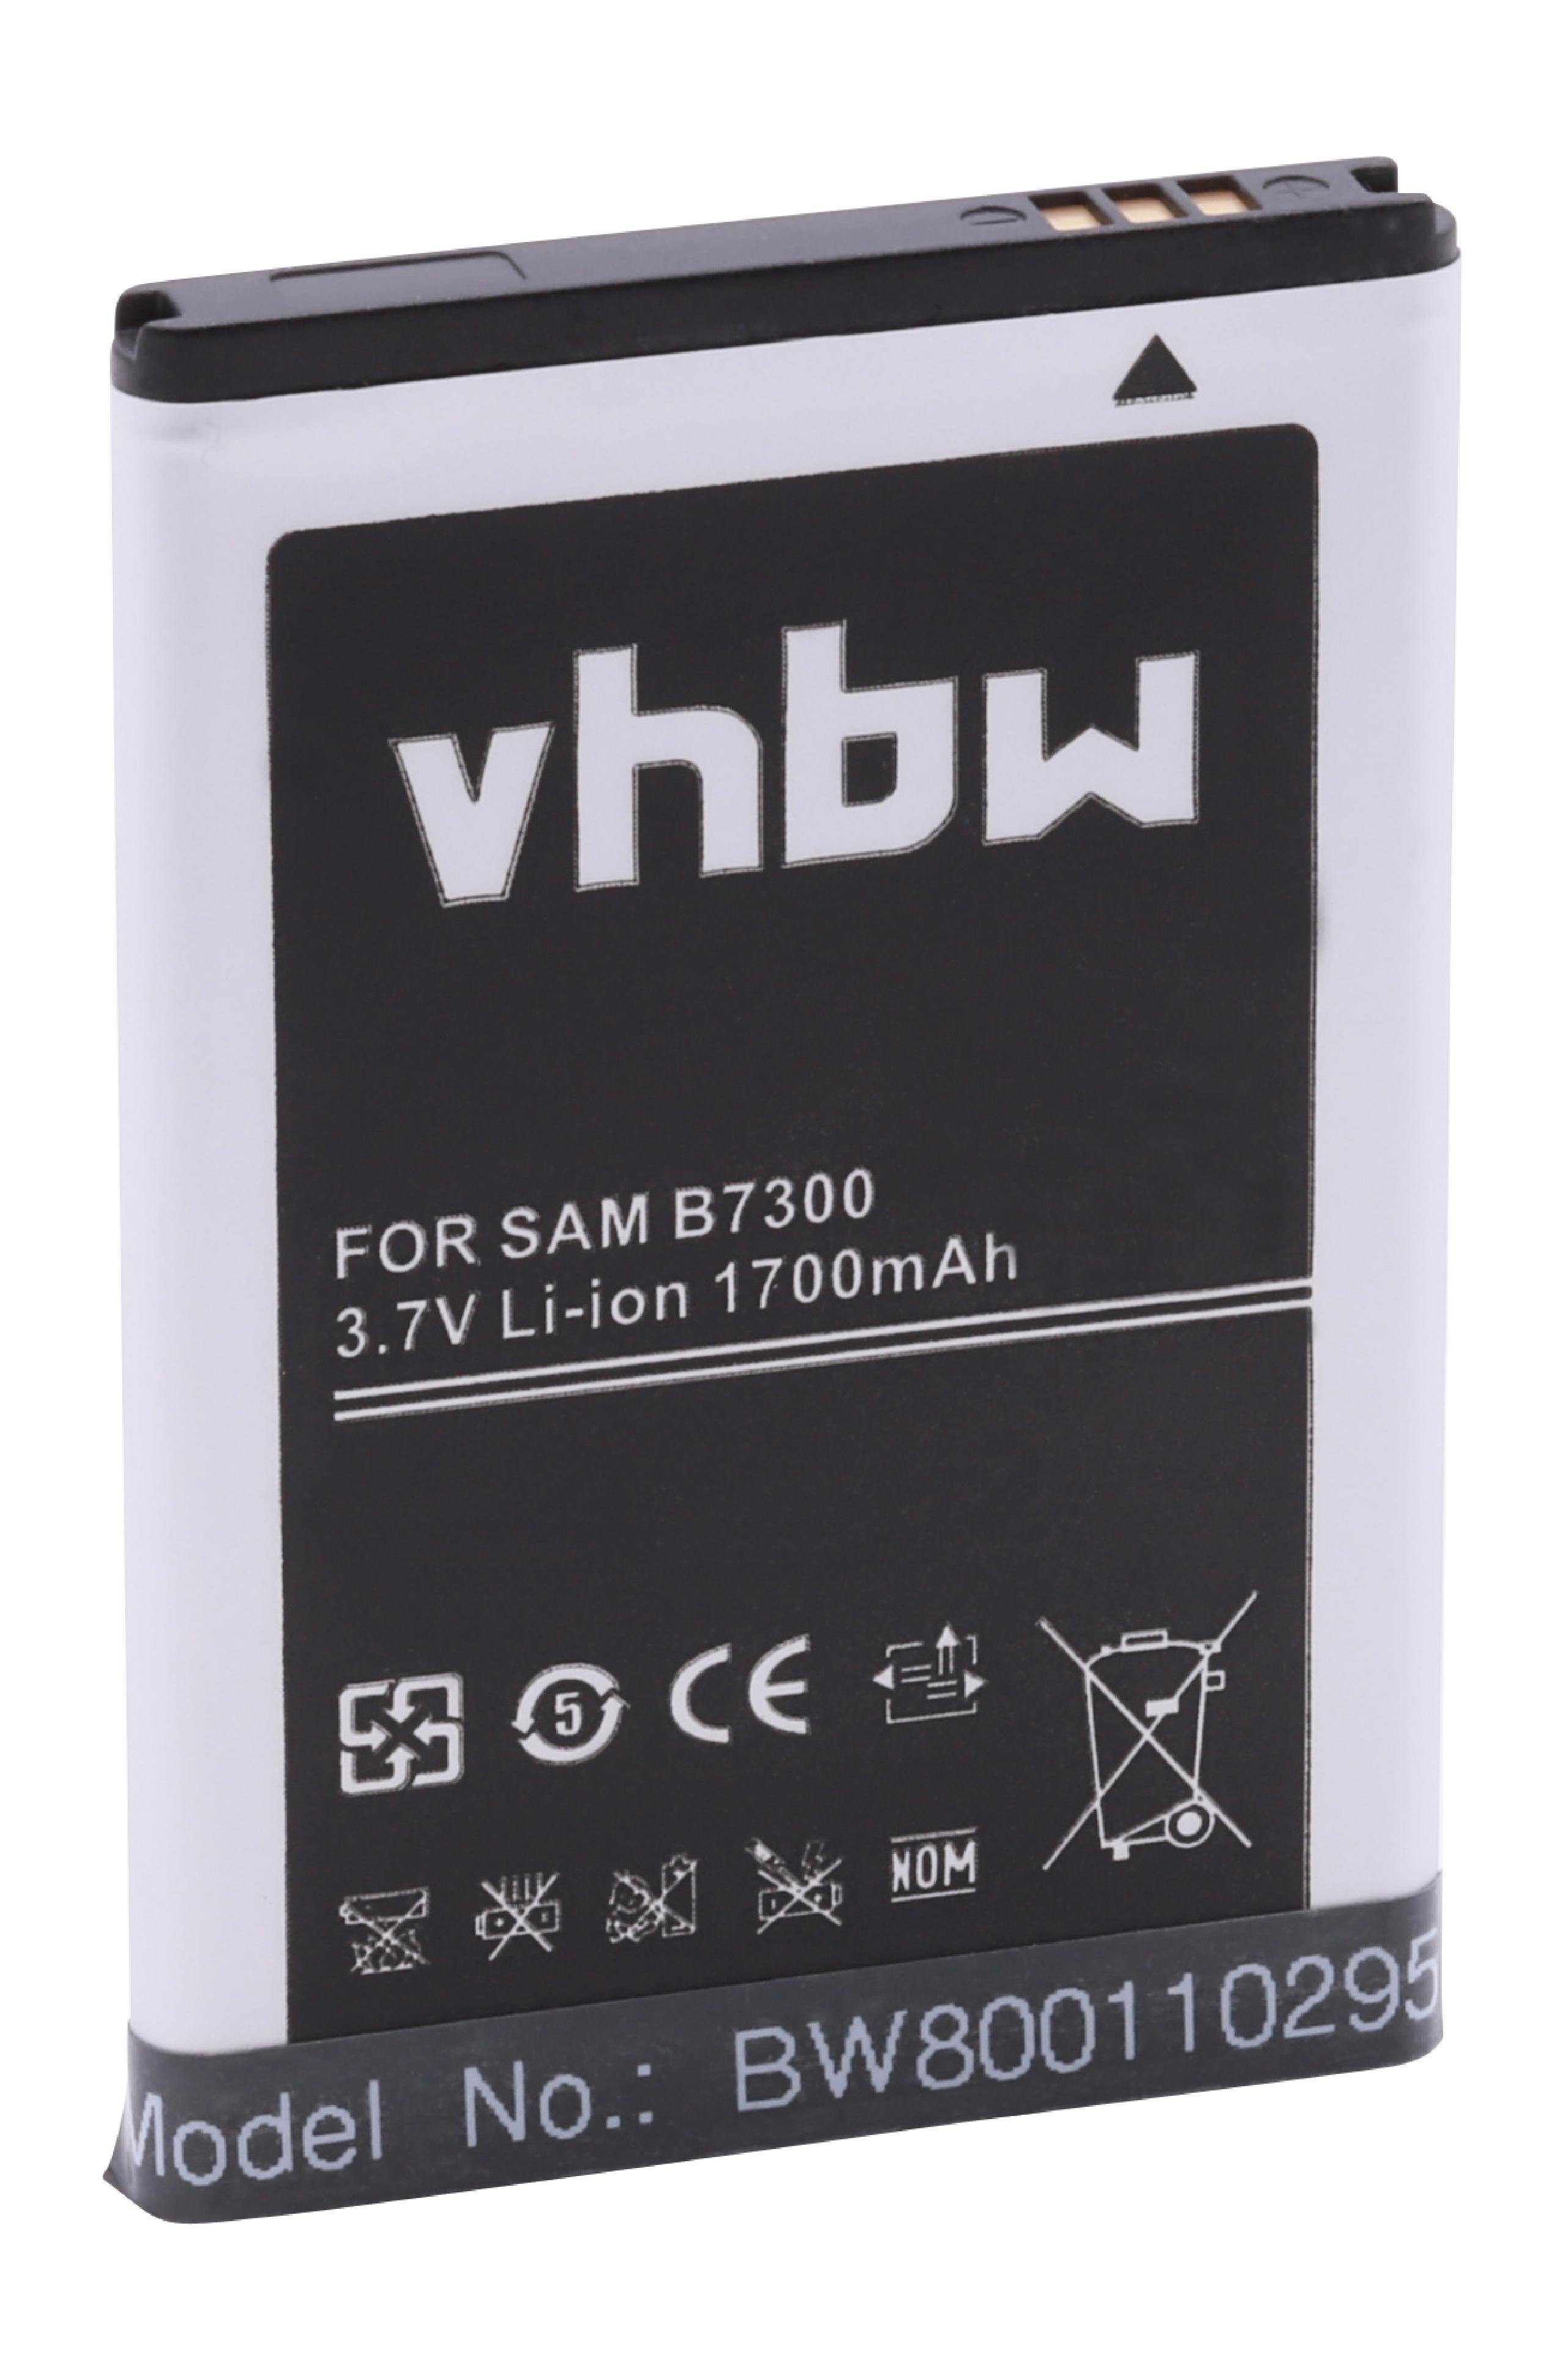 vhbw kompatibel mit Samsung SCH-R900 Craft, SCH-R900, SCH-R910, SCH-R930 Smartphone-Akku Li-Ion 1700 mAh (3,7 V)